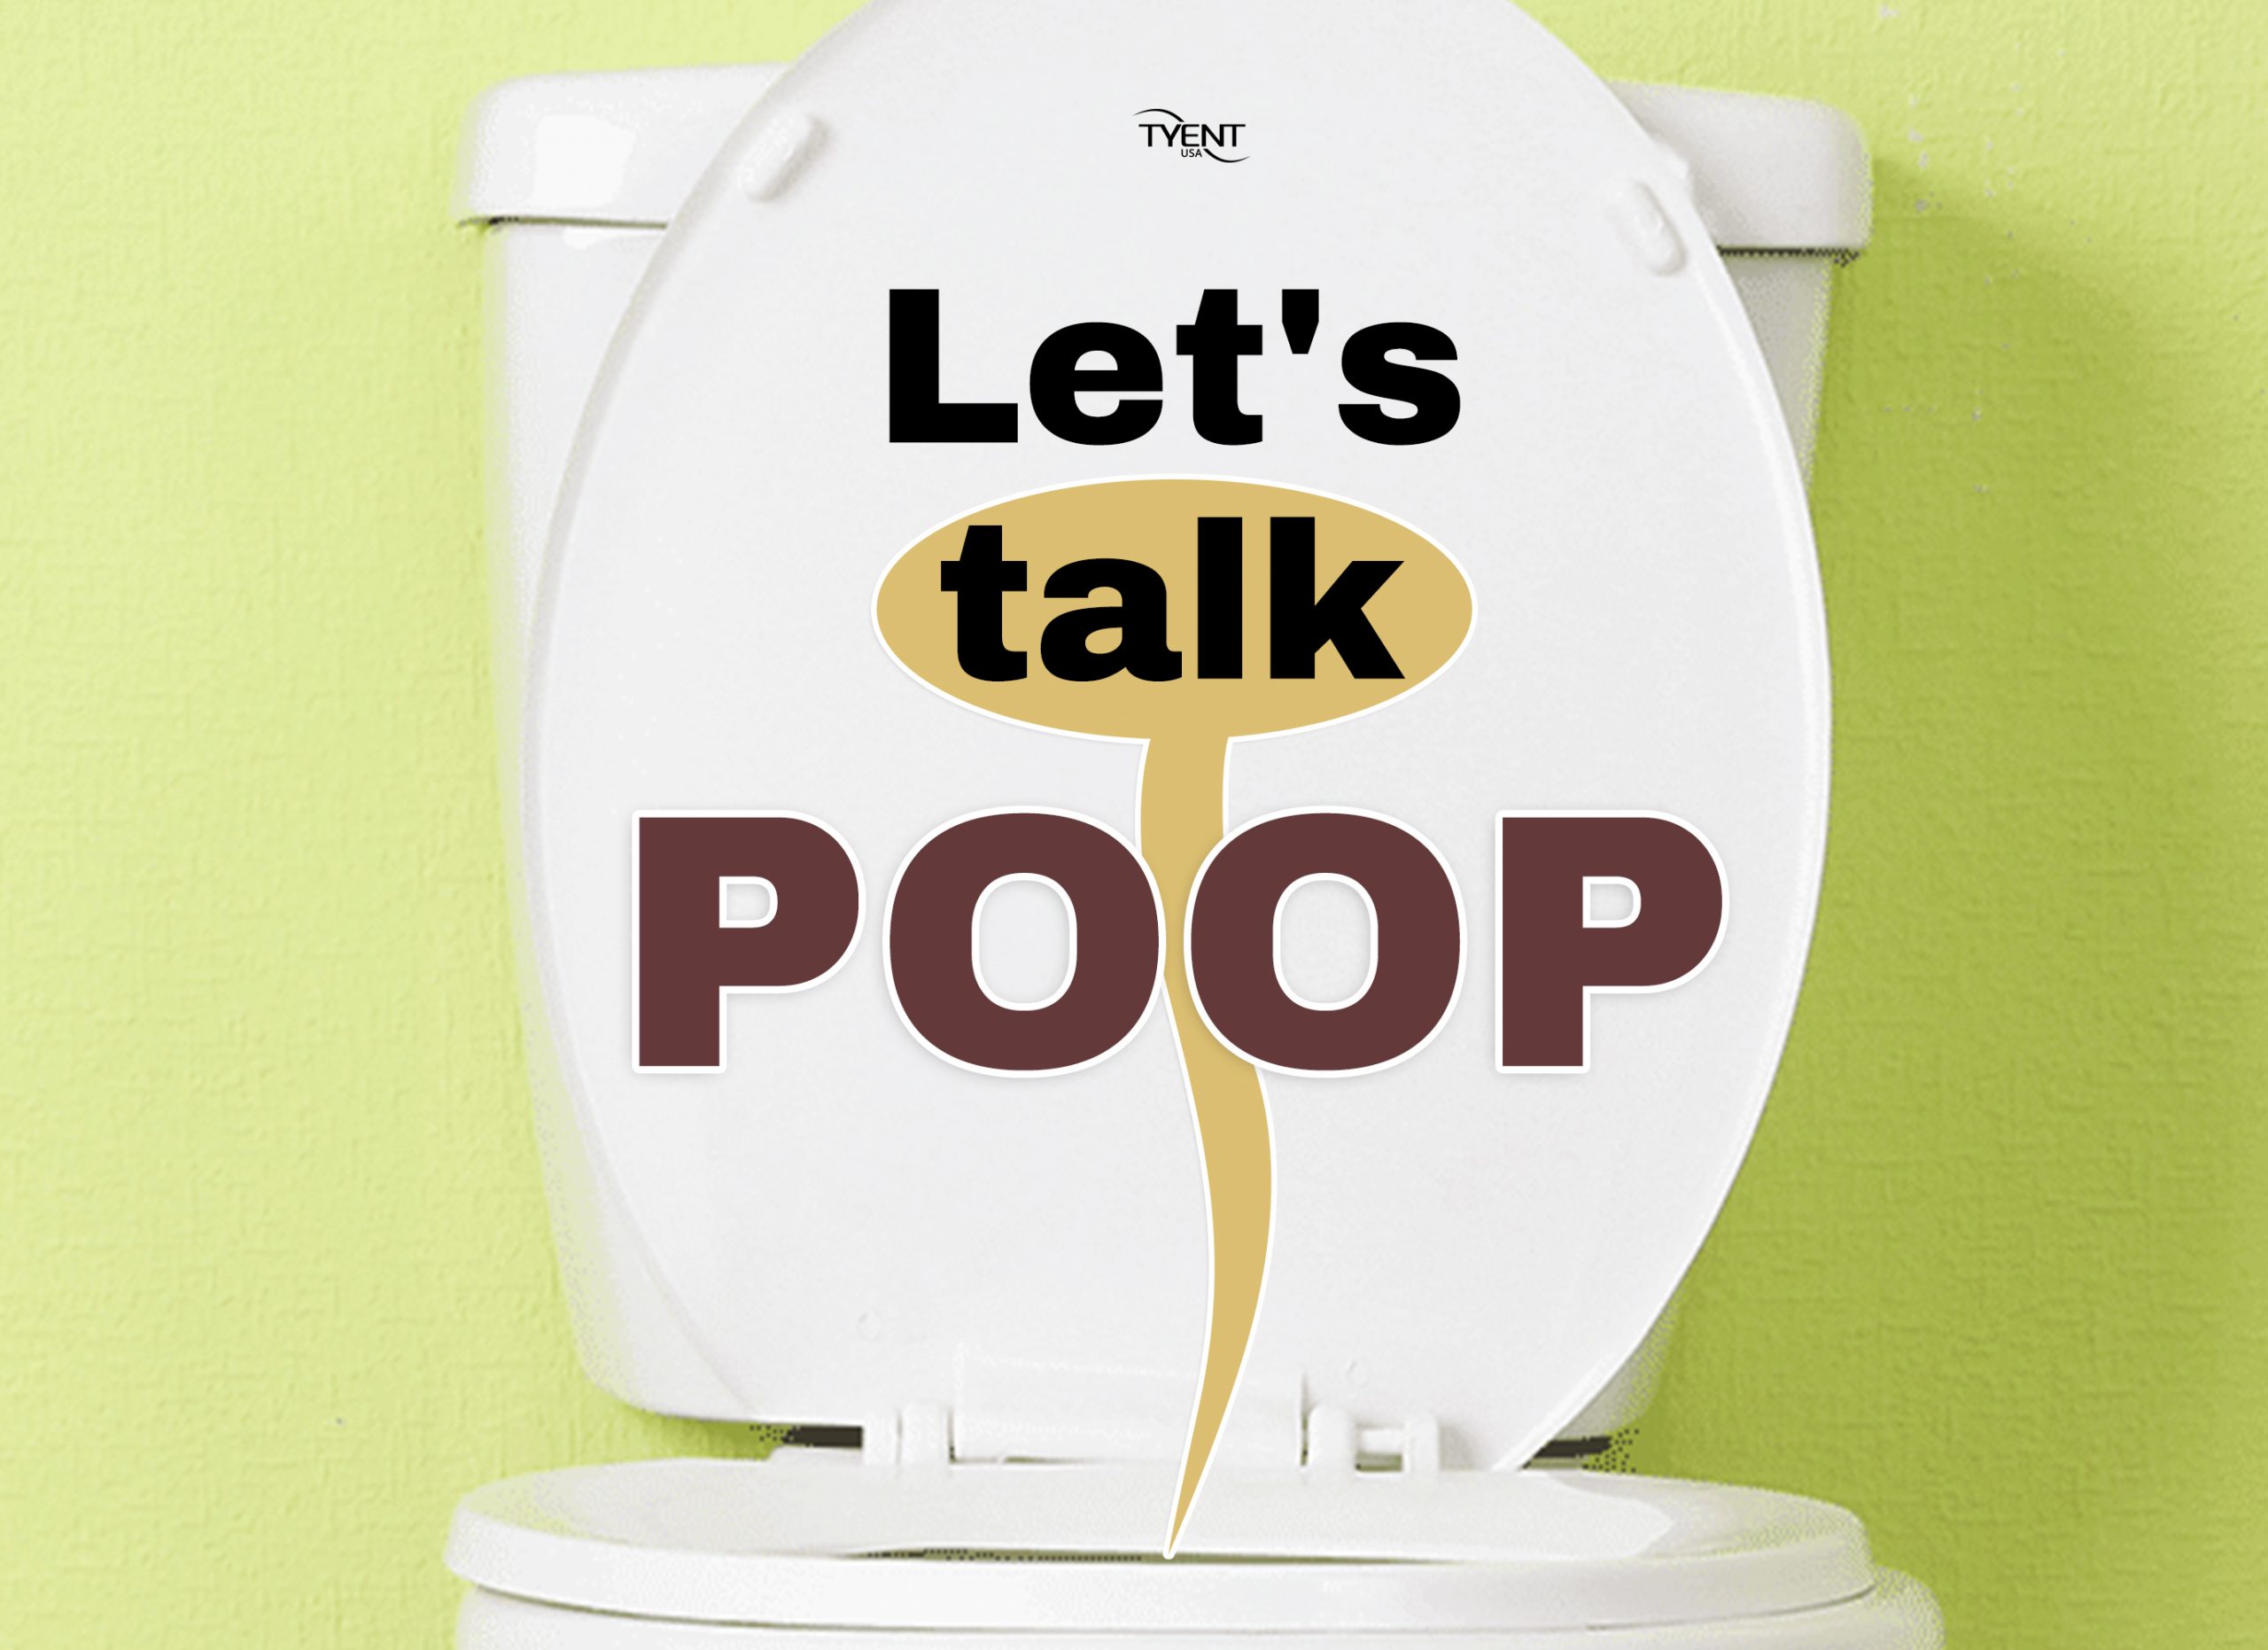 Let’s Talk Poop!